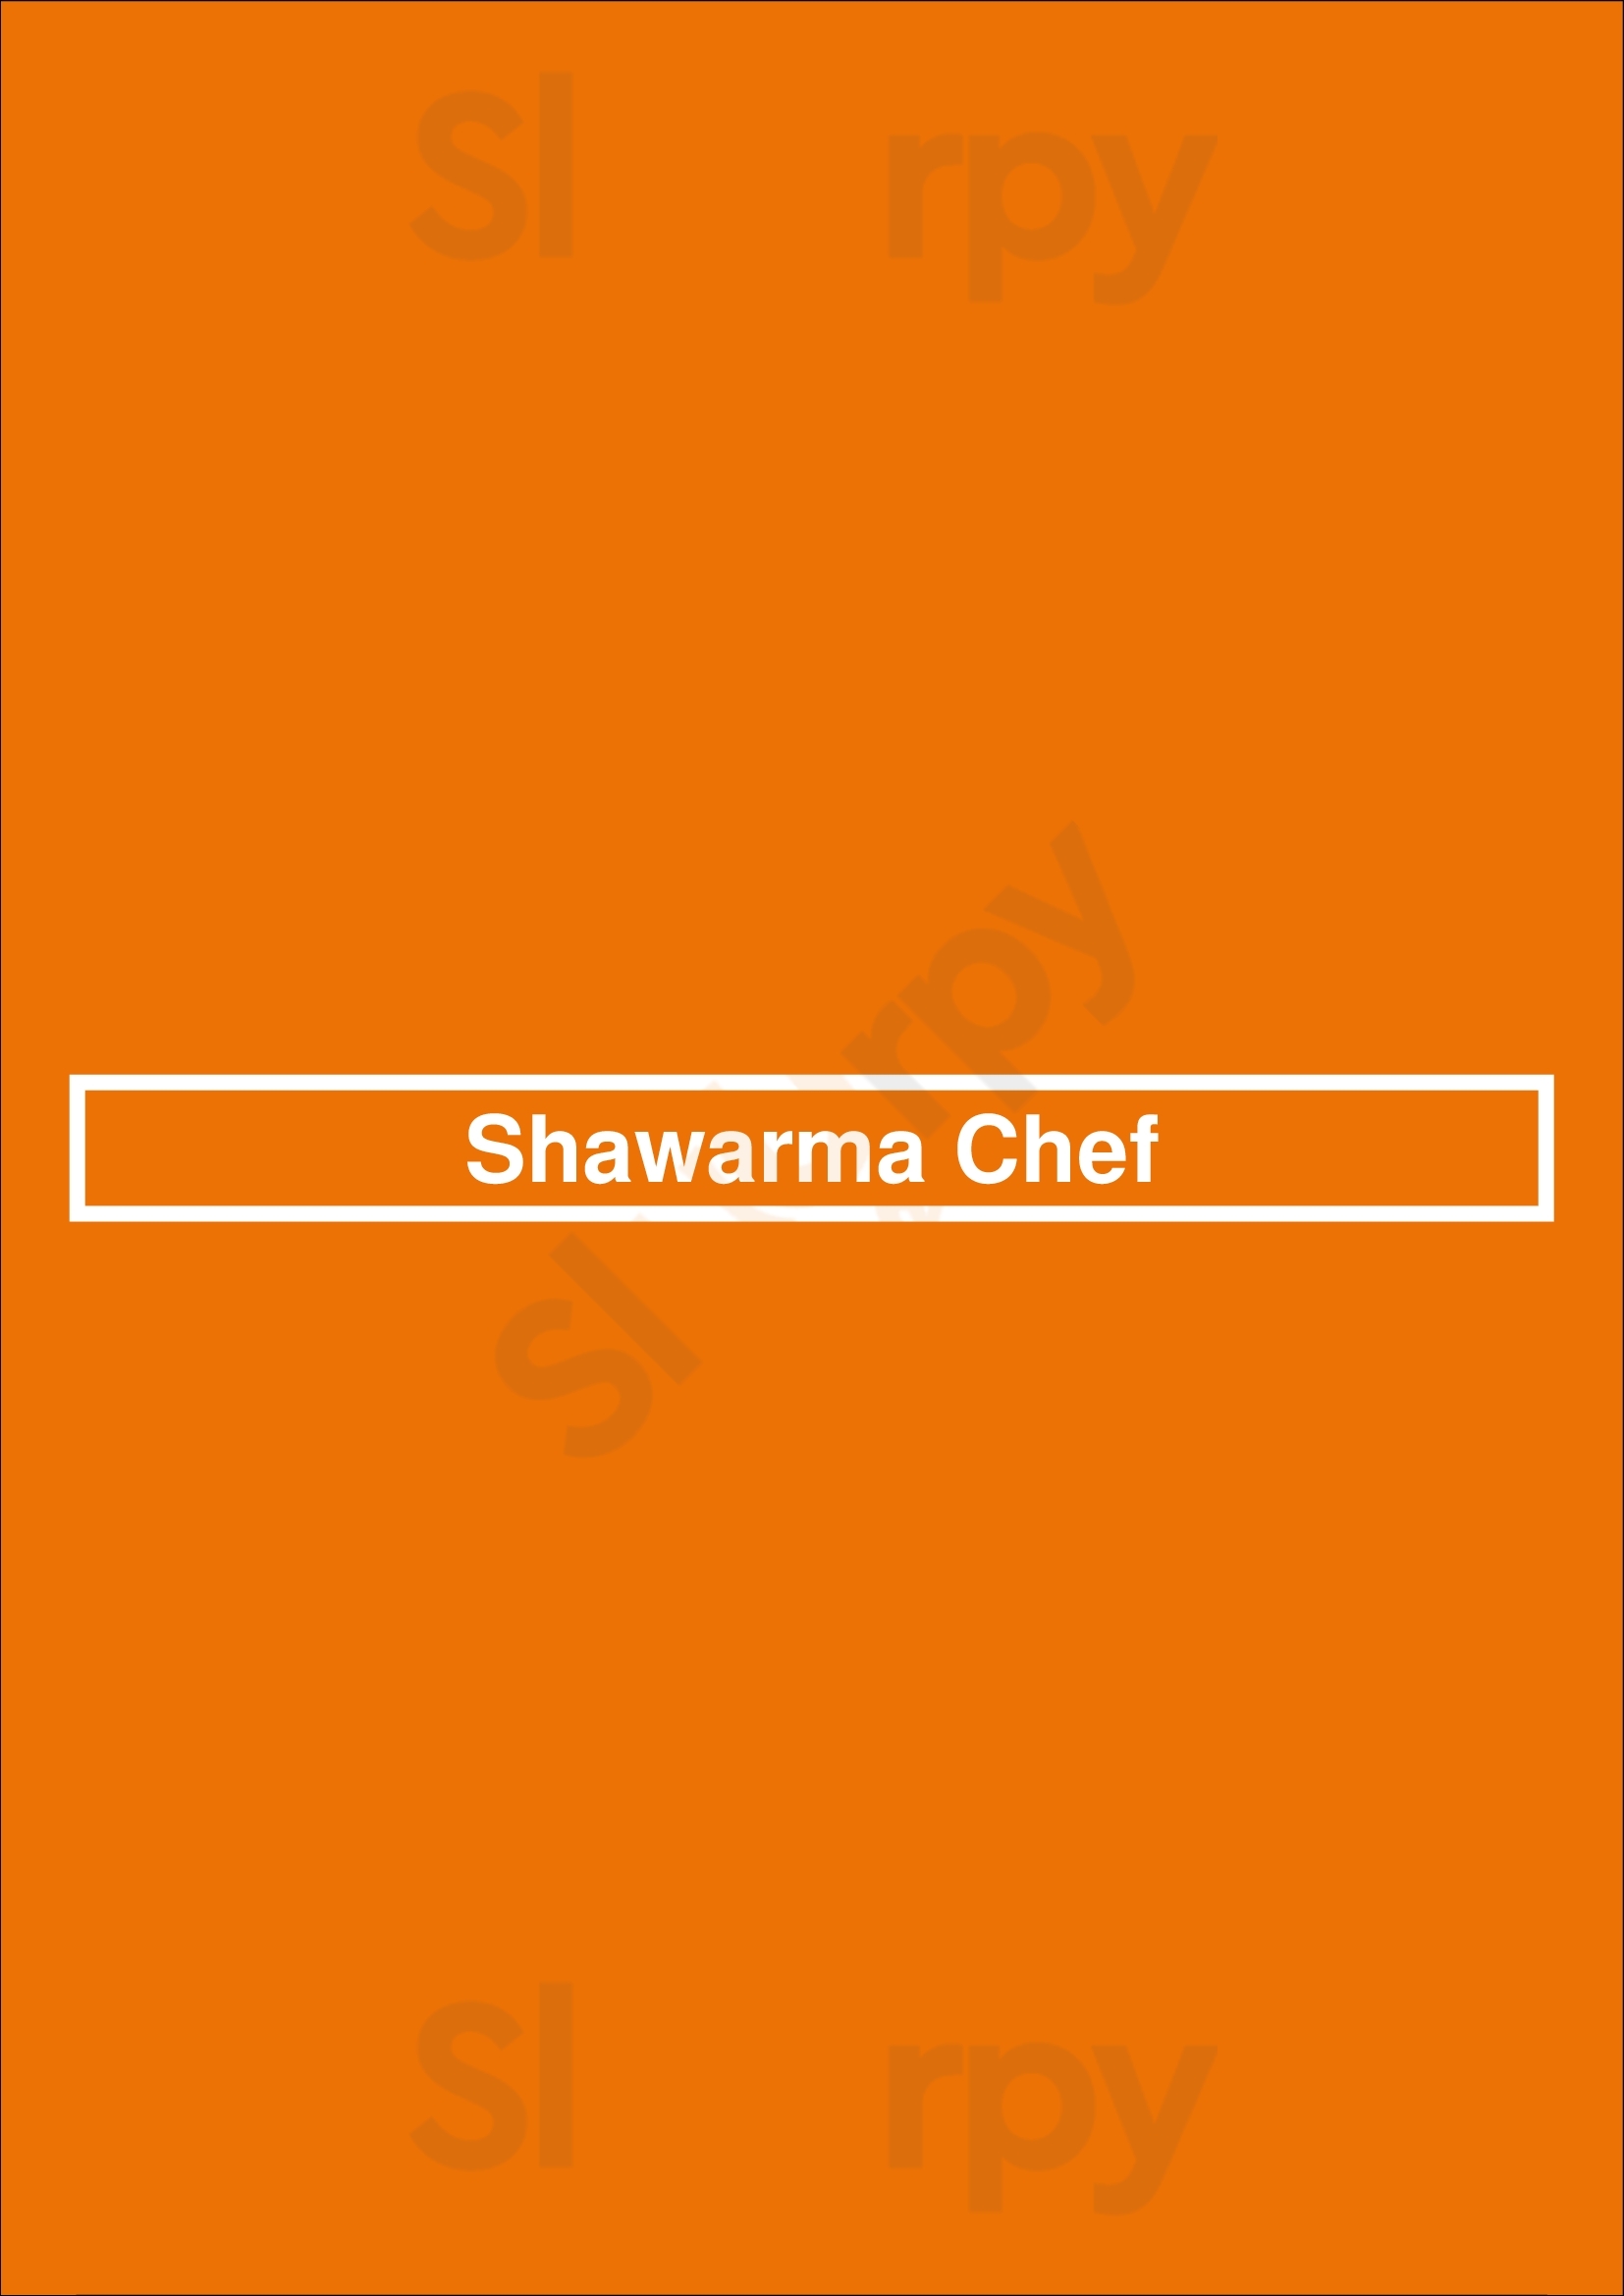 Shawarma Chef Ottawa Menu - 1